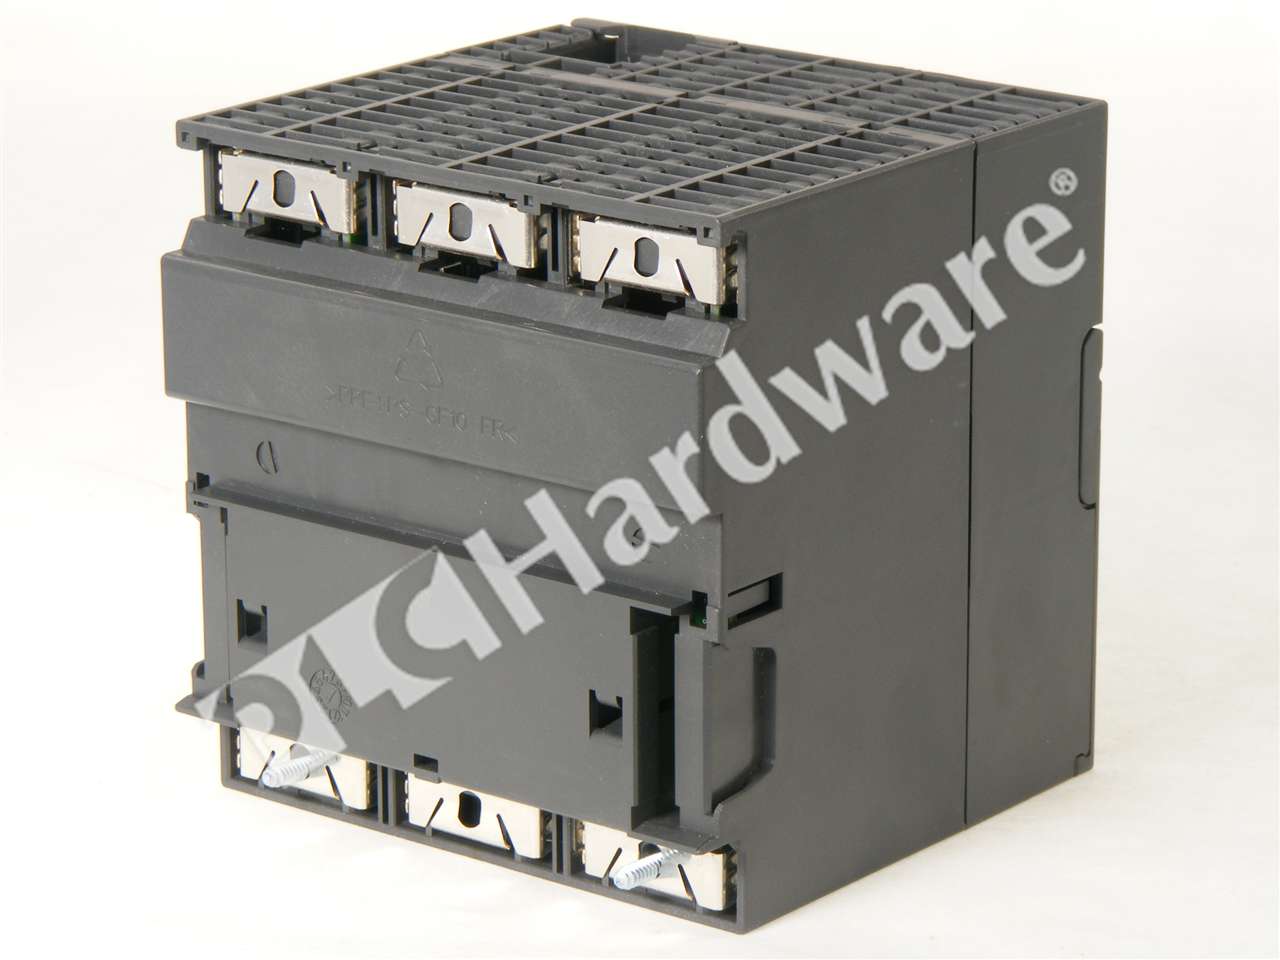 PLC Hardware - Siemens 6ES7313-6CF03-0AB0, Used PLCH Packaging